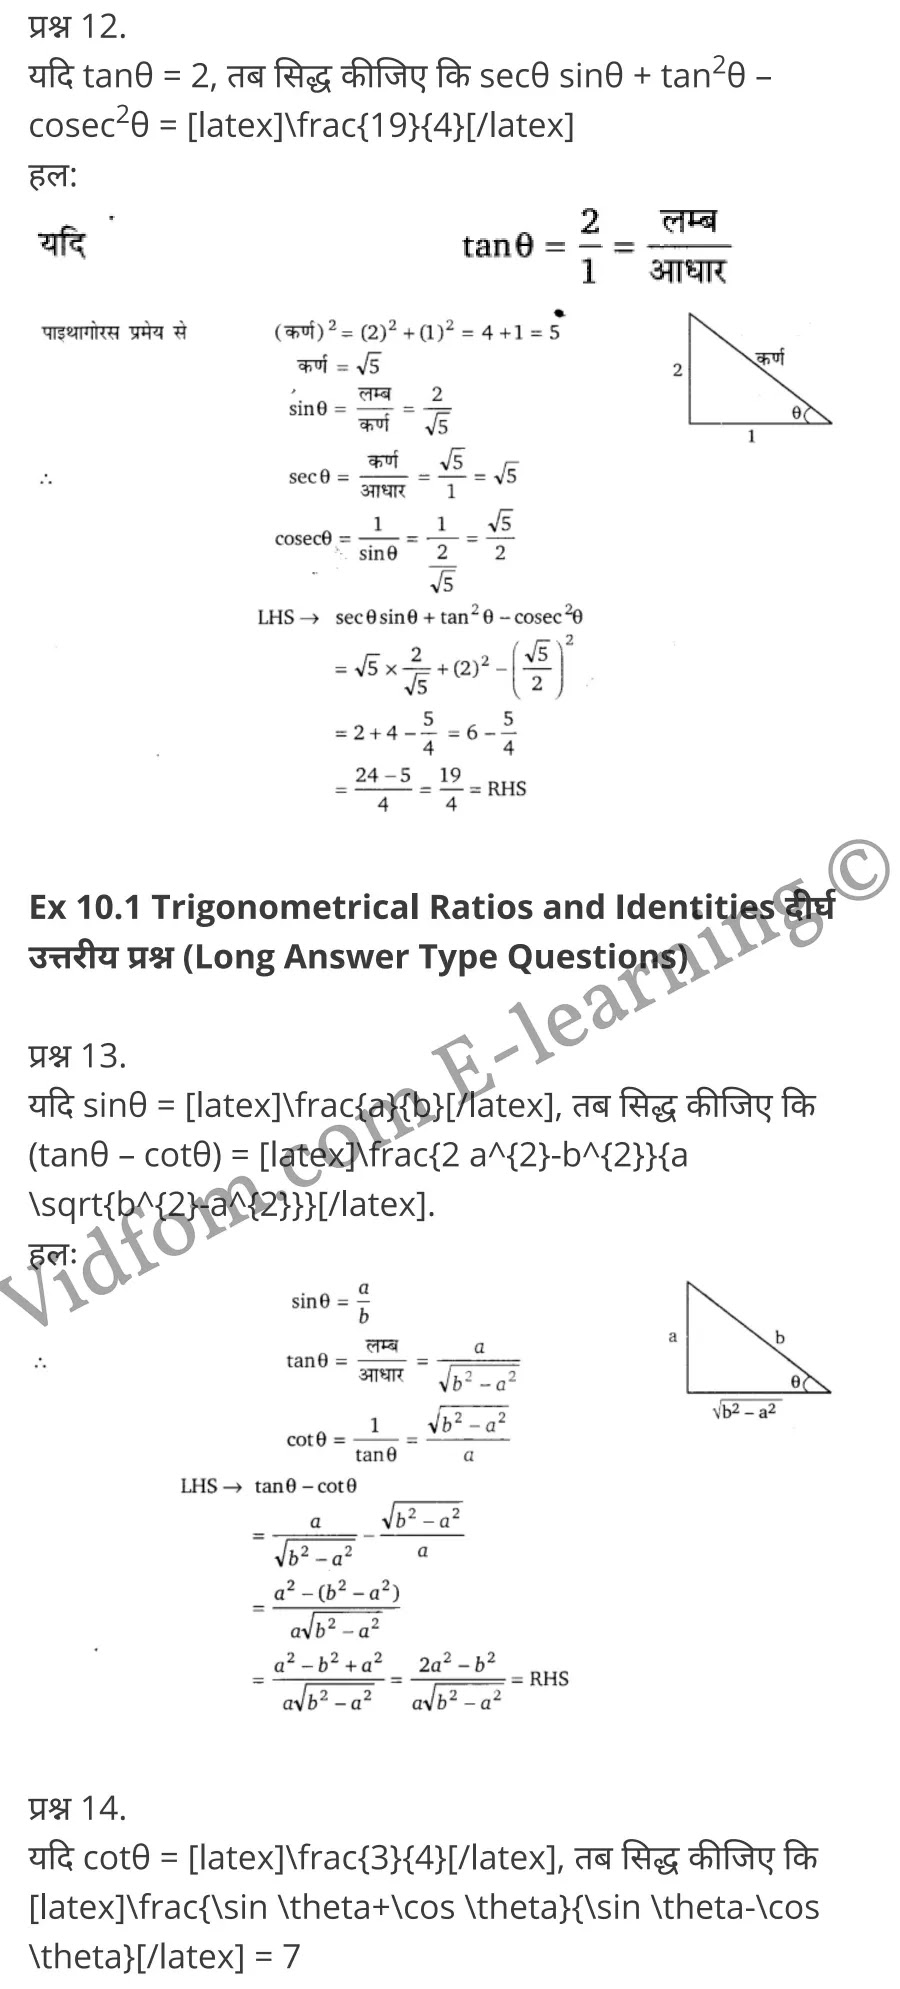 Class 10 Chapter 10 Trigonometrical Ratios and Identities (त्रिकोणमितीय अनुपात एवं असमिकाएँ)  Chapter 10 Trigonometrical Ratios and Identities Ex 10.1 Chapter 10 Trigonometrical Ratios and Identities Ex 10.2 Chapter 10 Trigonometrical Ratios and Identities Ex 10.3 Chapter 10 Trigonometrical Ratios and Identities Ex 10.4  कक्षा 10 बालाजी गणित  के नोट्स  हिंदी में एनसीईआरटी समाधान,     class 10 Balaji Maths Chapter 10,   class 10 Balaji Maths Chapter 10 ncert solutions in Hindi,   class 10 Balaji Maths Chapter 10 notes in hindi,   class 10 Balaji Maths Chapter 10 question answer,   class 10 Balaji Maths Chapter 10 notes,   class 10 Balaji Maths Chapter 10 class 10 Balaji Maths Chapter 10 in  hindi,    class 10 Balaji Maths Chapter 10 important questions in  hindi,   class 10 Balaji Maths Chapter 10 notes in hindi,    class 10 Balaji Maths Chapter 10 test,   class 10 Balaji Maths Chapter 10 pdf,   class 10 Balaji Maths Chapter 10 notes pdf,   class 10 Balaji Maths Chapter 10 exercise solutions,   class 10 Balaji Maths Chapter 10 notes study rankers,   class 10 Balaji Maths Chapter 10 notes,    class 10 Balaji Maths Chapter 10  class 10  notes pdf,   class 10 Balaji Maths Chapter 10 class 10  notes  ncert,   class 10 Balaji Maths Chapter 10 class 10 pdf,   class 10 Balaji Maths Chapter 10  book,   class 10 Balaji Maths Chapter 10 quiz class 10  ,    10  th class 10 Balaji Maths Chapter 10  book up board,   up board 10  th class 10 Balaji Maths Chapter 10 notes,  class 10 Balaji Maths,   class 10 Balaji Maths ncert solutions in Hindi,   class 10 Balaji Maths notes in hindi,   class 10 Balaji Maths question answer,   class 10 Balaji Maths notes,  class 10 Balaji Maths class 10 Balaji Maths Chapter 10 in  hindi,    class 10 Balaji Maths important questions in  hindi,   class 10 Balaji Maths notes in hindi,    class 10 Balaji Maths test,  class 10 Balaji Maths class 10 Balaji Maths Chapter 10 pdf,   class 10 Balaji Maths notes pdf,   class 10 Balaji Maths exercise solutions,   class 10 Balaji Maths,  class 10 Balaji Maths notes study rankers,   class 10 Balaji Maths notes,  class 10 Balaji Maths notes,   class 10 Balaji Maths  class 10  notes pdf,   class 10 Balaji Maths class 10  notes  ncert,   class 10 Balaji Maths class 10 pdf,   class 10 Balaji Maths  book,  class 10 Balaji Maths quiz class 10  ,  10  th class 10 Balaji Maths    book up board,    up board 10  th class 10 Balaji Maths notes,      कक्षा 10 बालाजी गणित अध्याय 10 ,  कक्षा 10 बालाजी गणित, कक्षा 10 बालाजी गणित अध्याय 10  के नोट्स हिंदी में,  कक्षा 10 का हिंदी अध्याय 10 का प्रश्न उत्तर,  कक्षा 10 बालाजी गणित अध्याय 10  के नोट्स,  10 कक्षा बालाजी गणित  हिंदी में, कक्षा 10 बालाजी गणित अध्याय 10  हिंदी में,  कक्षा 10 बालाजी गणित अध्याय 10  महत्वपूर्ण प्रश्न हिंदी में, कक्षा 10   हिंदी के नोट्स  हिंदी में, बालाजी गणित हिंदी में  कक्षा 10 नोट्स pdf,    बालाजी गणित हिंदी में  कक्षा 10 नोट्स 2021 ncert,   बालाजी गणित हिंदी  कक्षा 10 pdf,   बालाजी गणित हिंदी में  पुस्तक,   बालाजी गणित हिंदी में की बुक,   बालाजी गणित हिंदी में  प्रश्नोत्तरी class 10 ,  बिहार बोर्ड 10  पुस्तक वीं हिंदी नोट्स,    बालाजी गणित कक्षा 10 नोट्स 2021 ncert,   बालाजी गणित  कक्षा 10 pdf,   बालाजी गणित  पुस्तक,   बालाजी गणित  प्रश्नोत्तरी class 10, कक्षा 10 बालाजी गणित,  कक्षा 10 बालाजी गणित  के नोट्स हिंदी में,  कक्षा 10 का हिंदी का प्रश्न उत्तर,  कक्षा 10 बालाजी गणित  के नोट्स,  10 कक्षा हिंदी 2021  हिंदी में, कक्षा 10 बालाजी गणित  हिंदी में,  कक्षा 10 बालाजी गणित  महत्वपूर्ण प्रश्न हिंदी में, कक्षा 10 बालाजी गणित  नोट्स  हिंदी में,